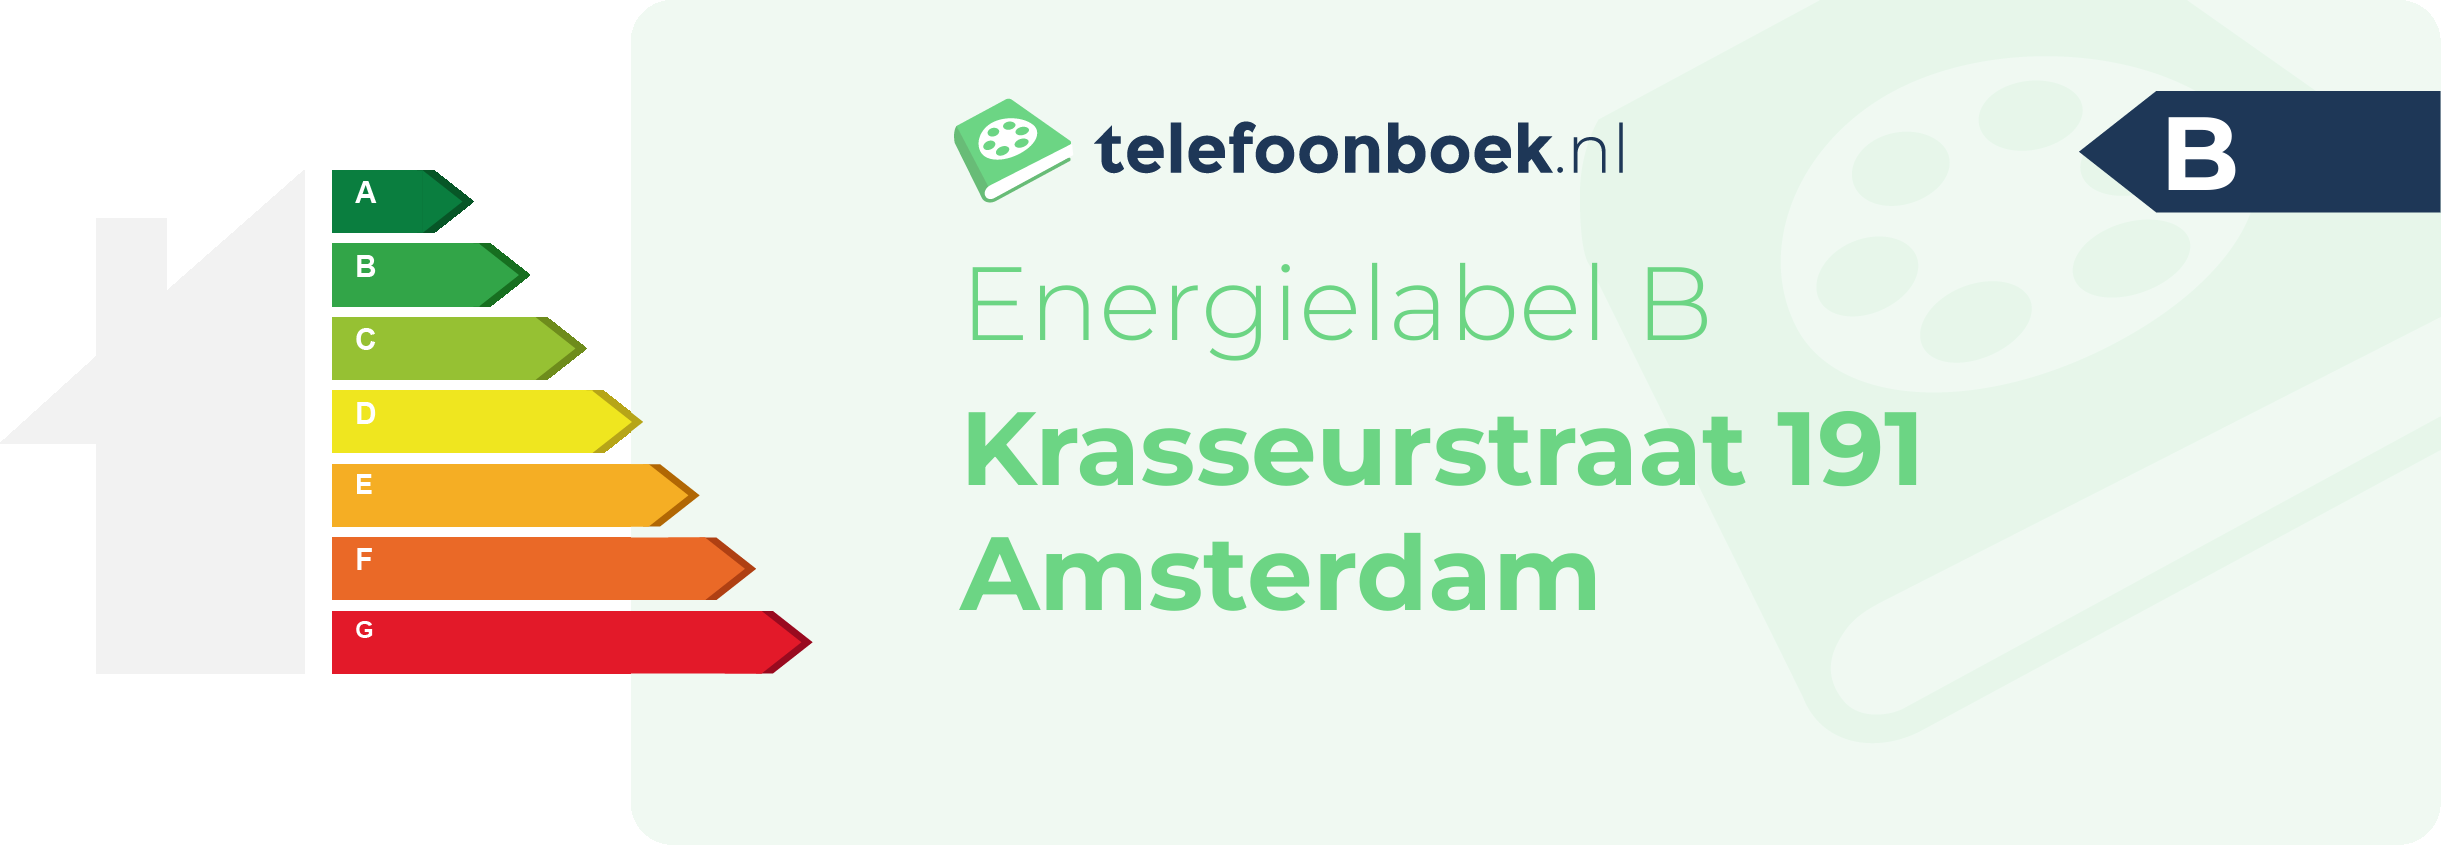 Energielabel Krasseurstraat 191 Amsterdam